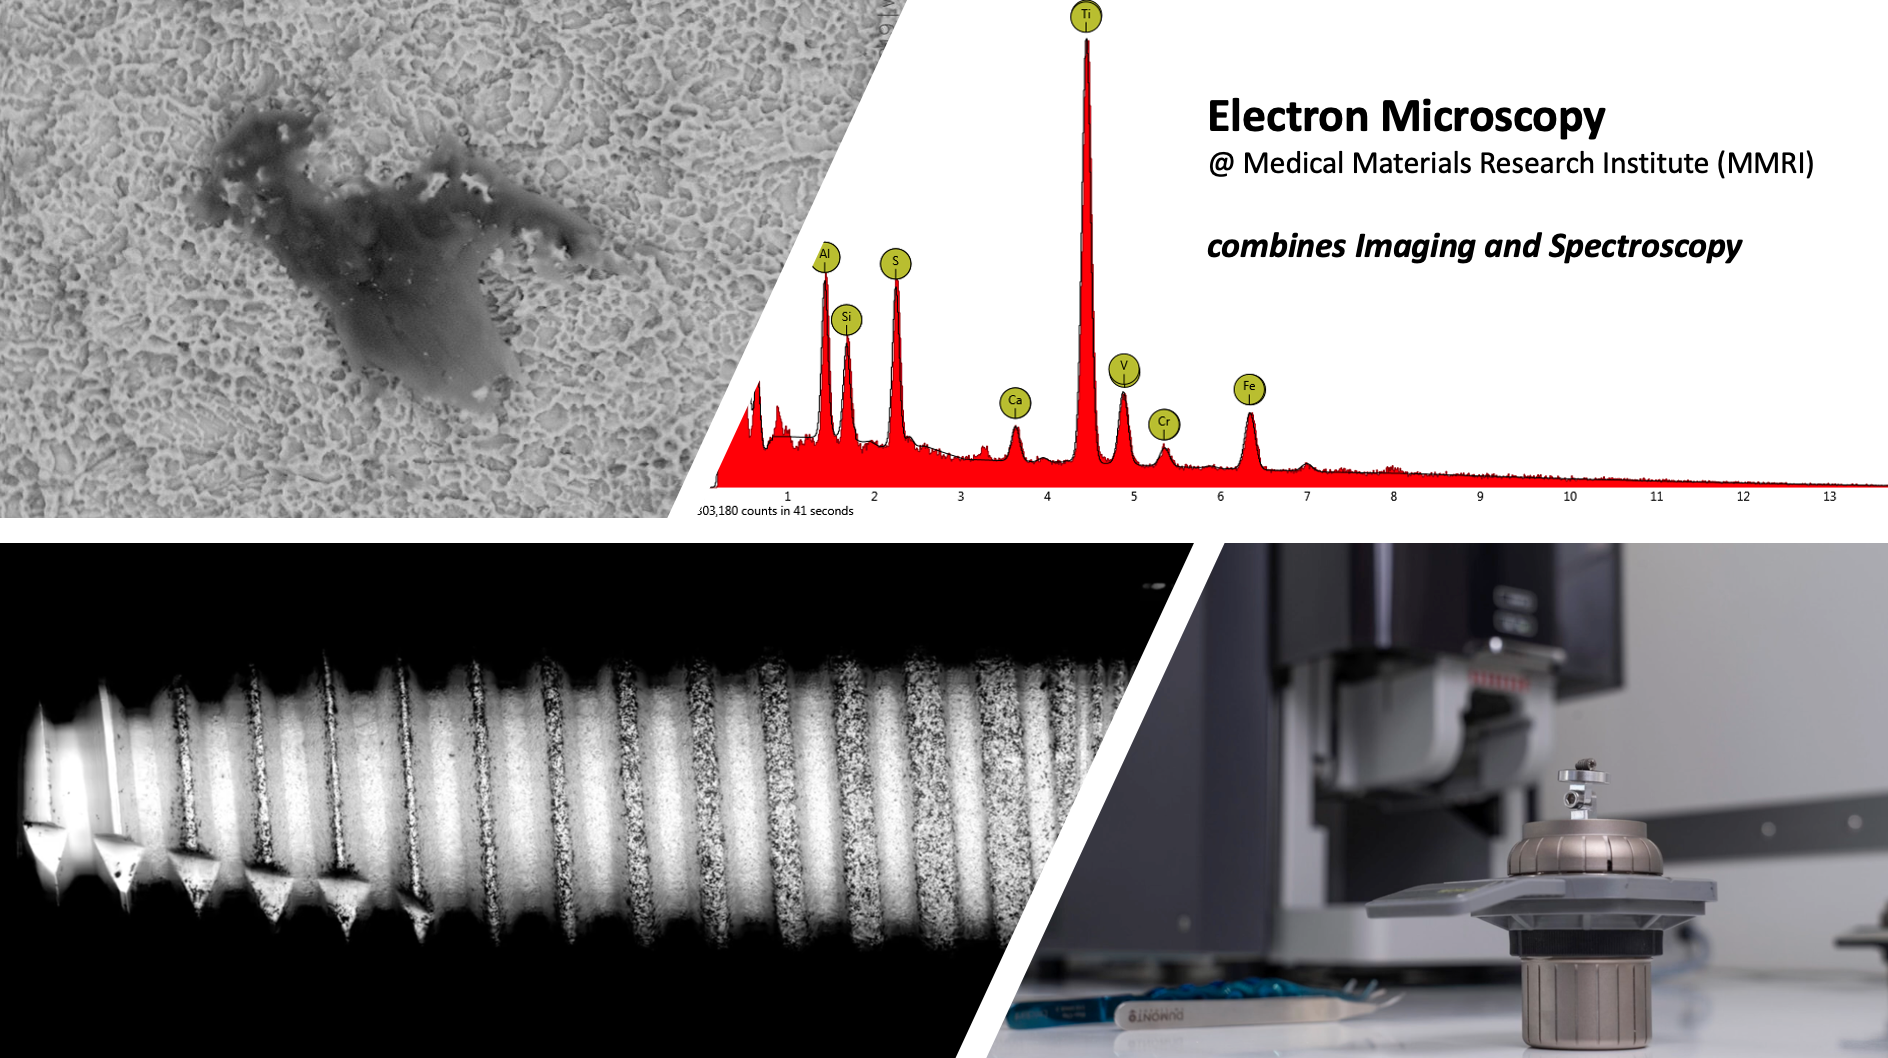 mmri-electron microscopy